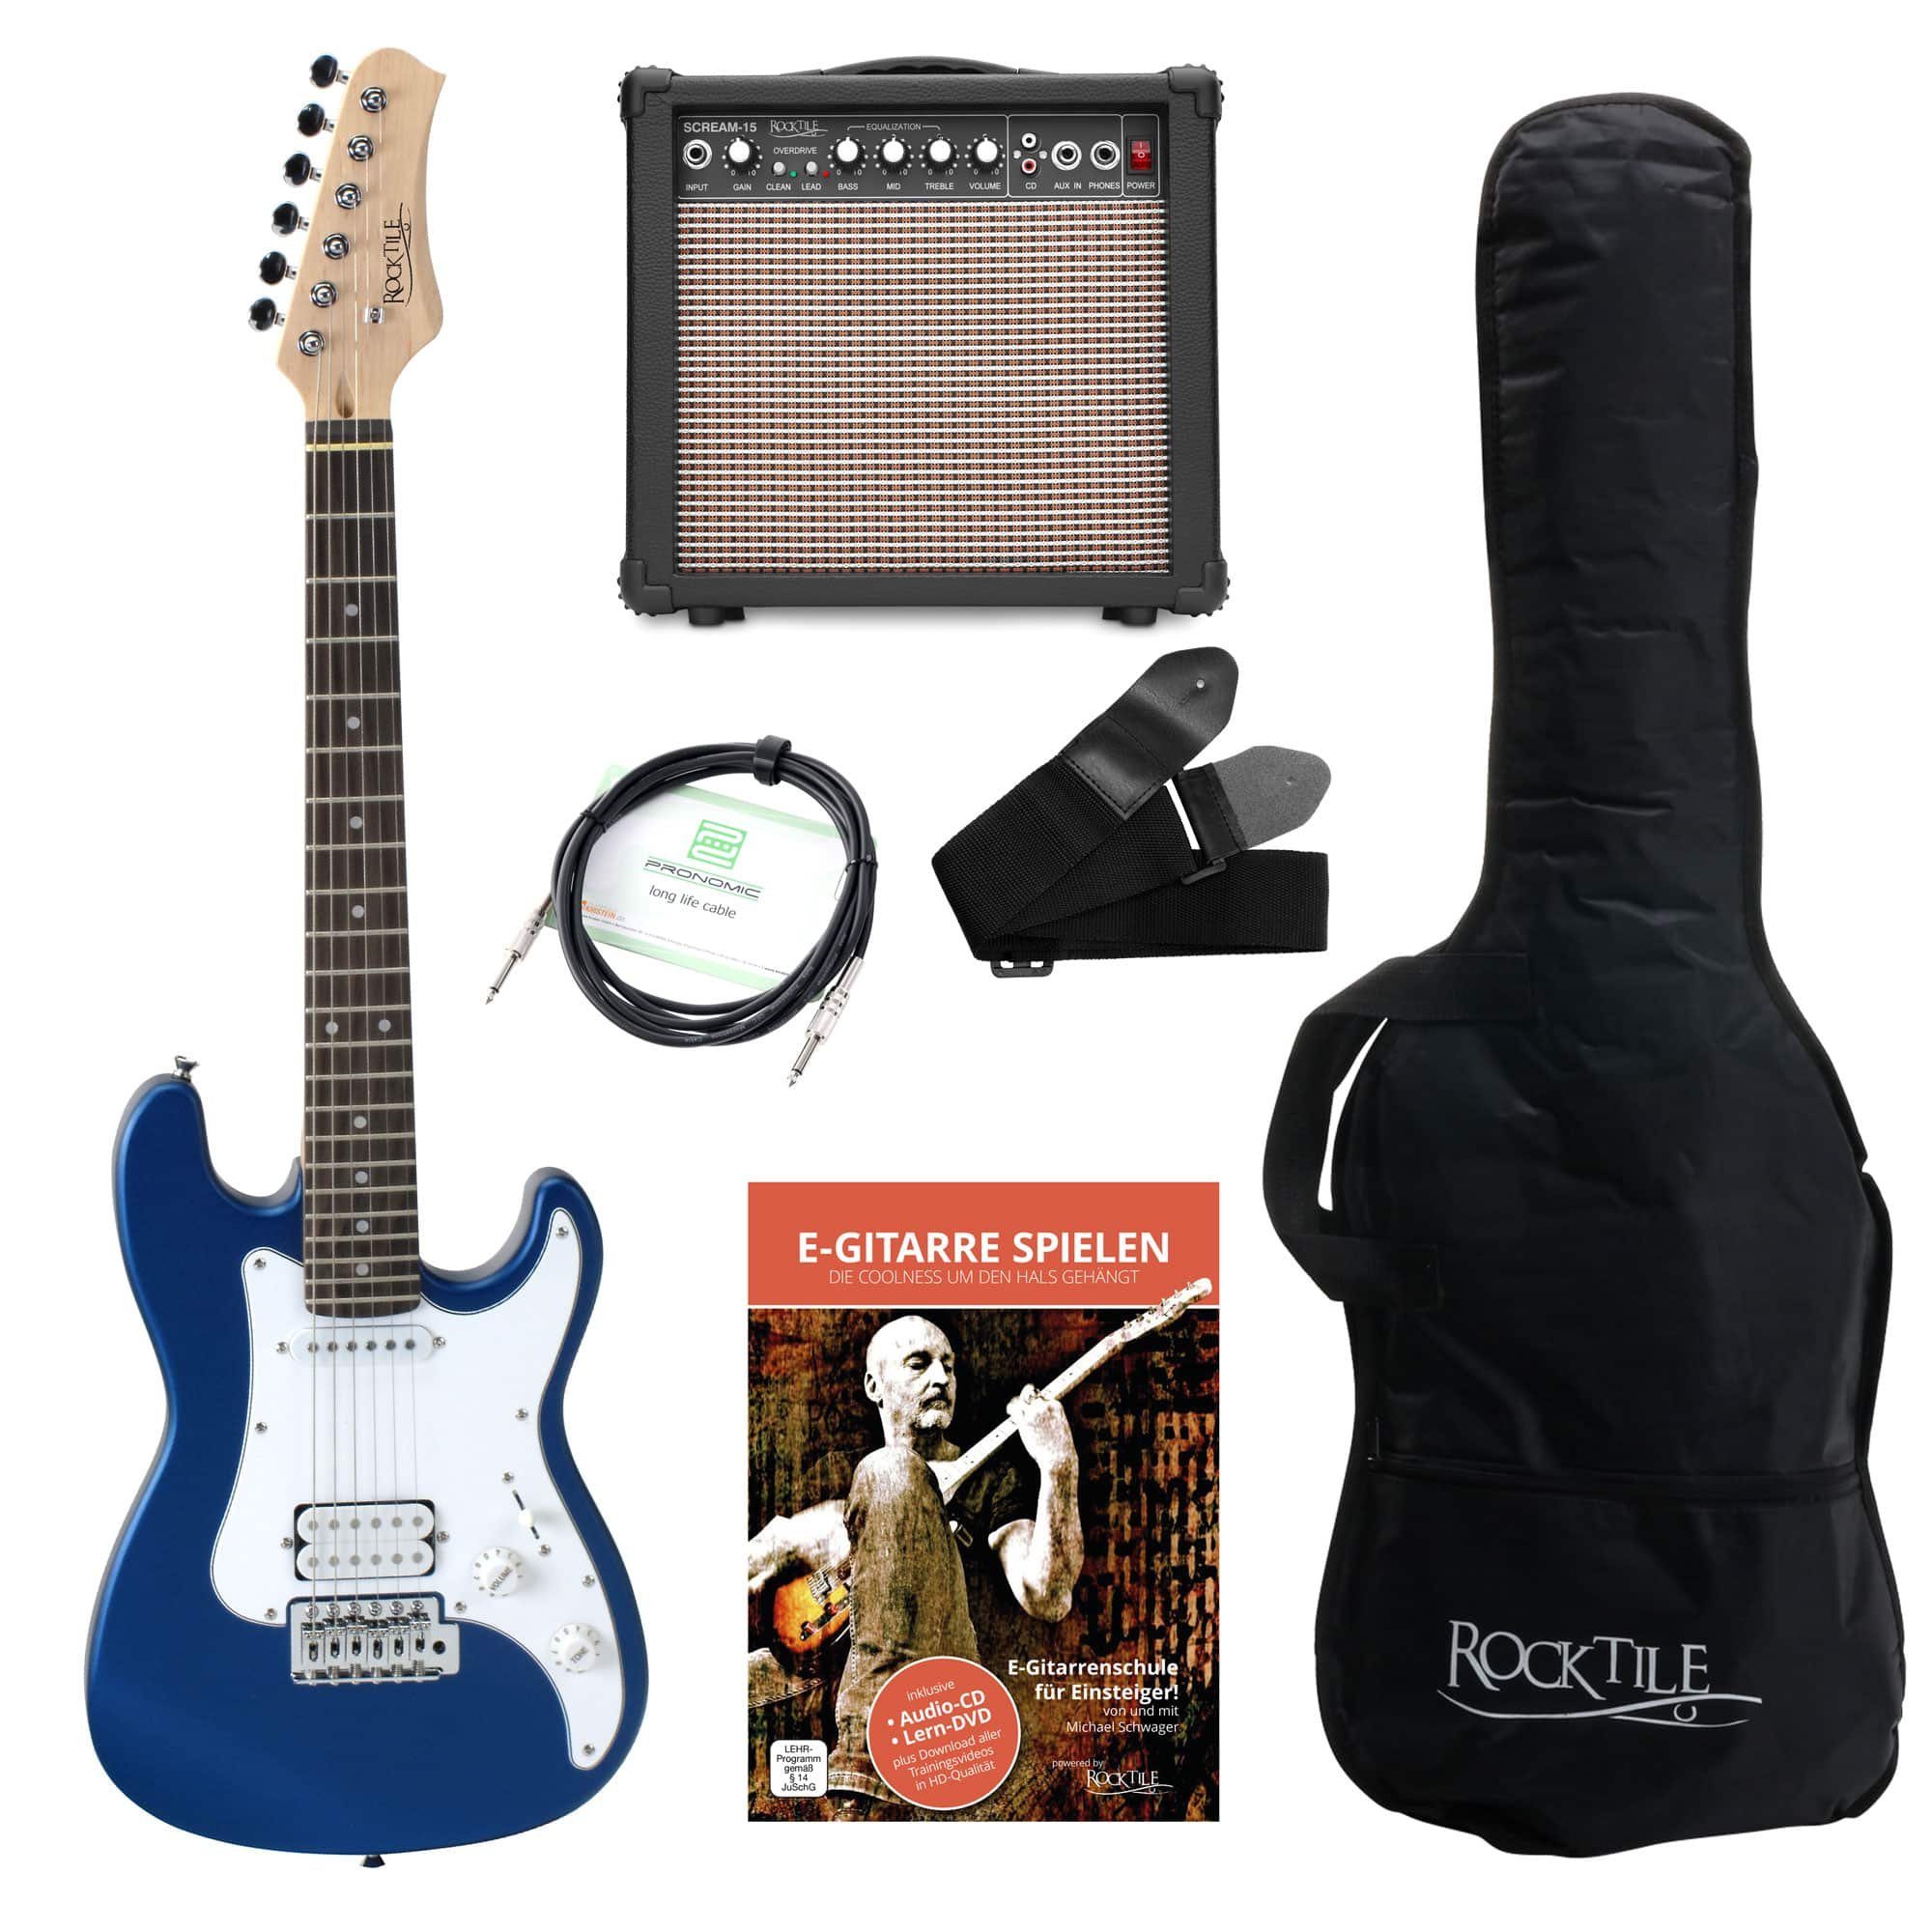 Rocktile E-Gitarre Sphere Junior elektrische Gitarre für Kinder, inkl.  Verstärker, Kabel, Gurt und Schule mit CD/DVD